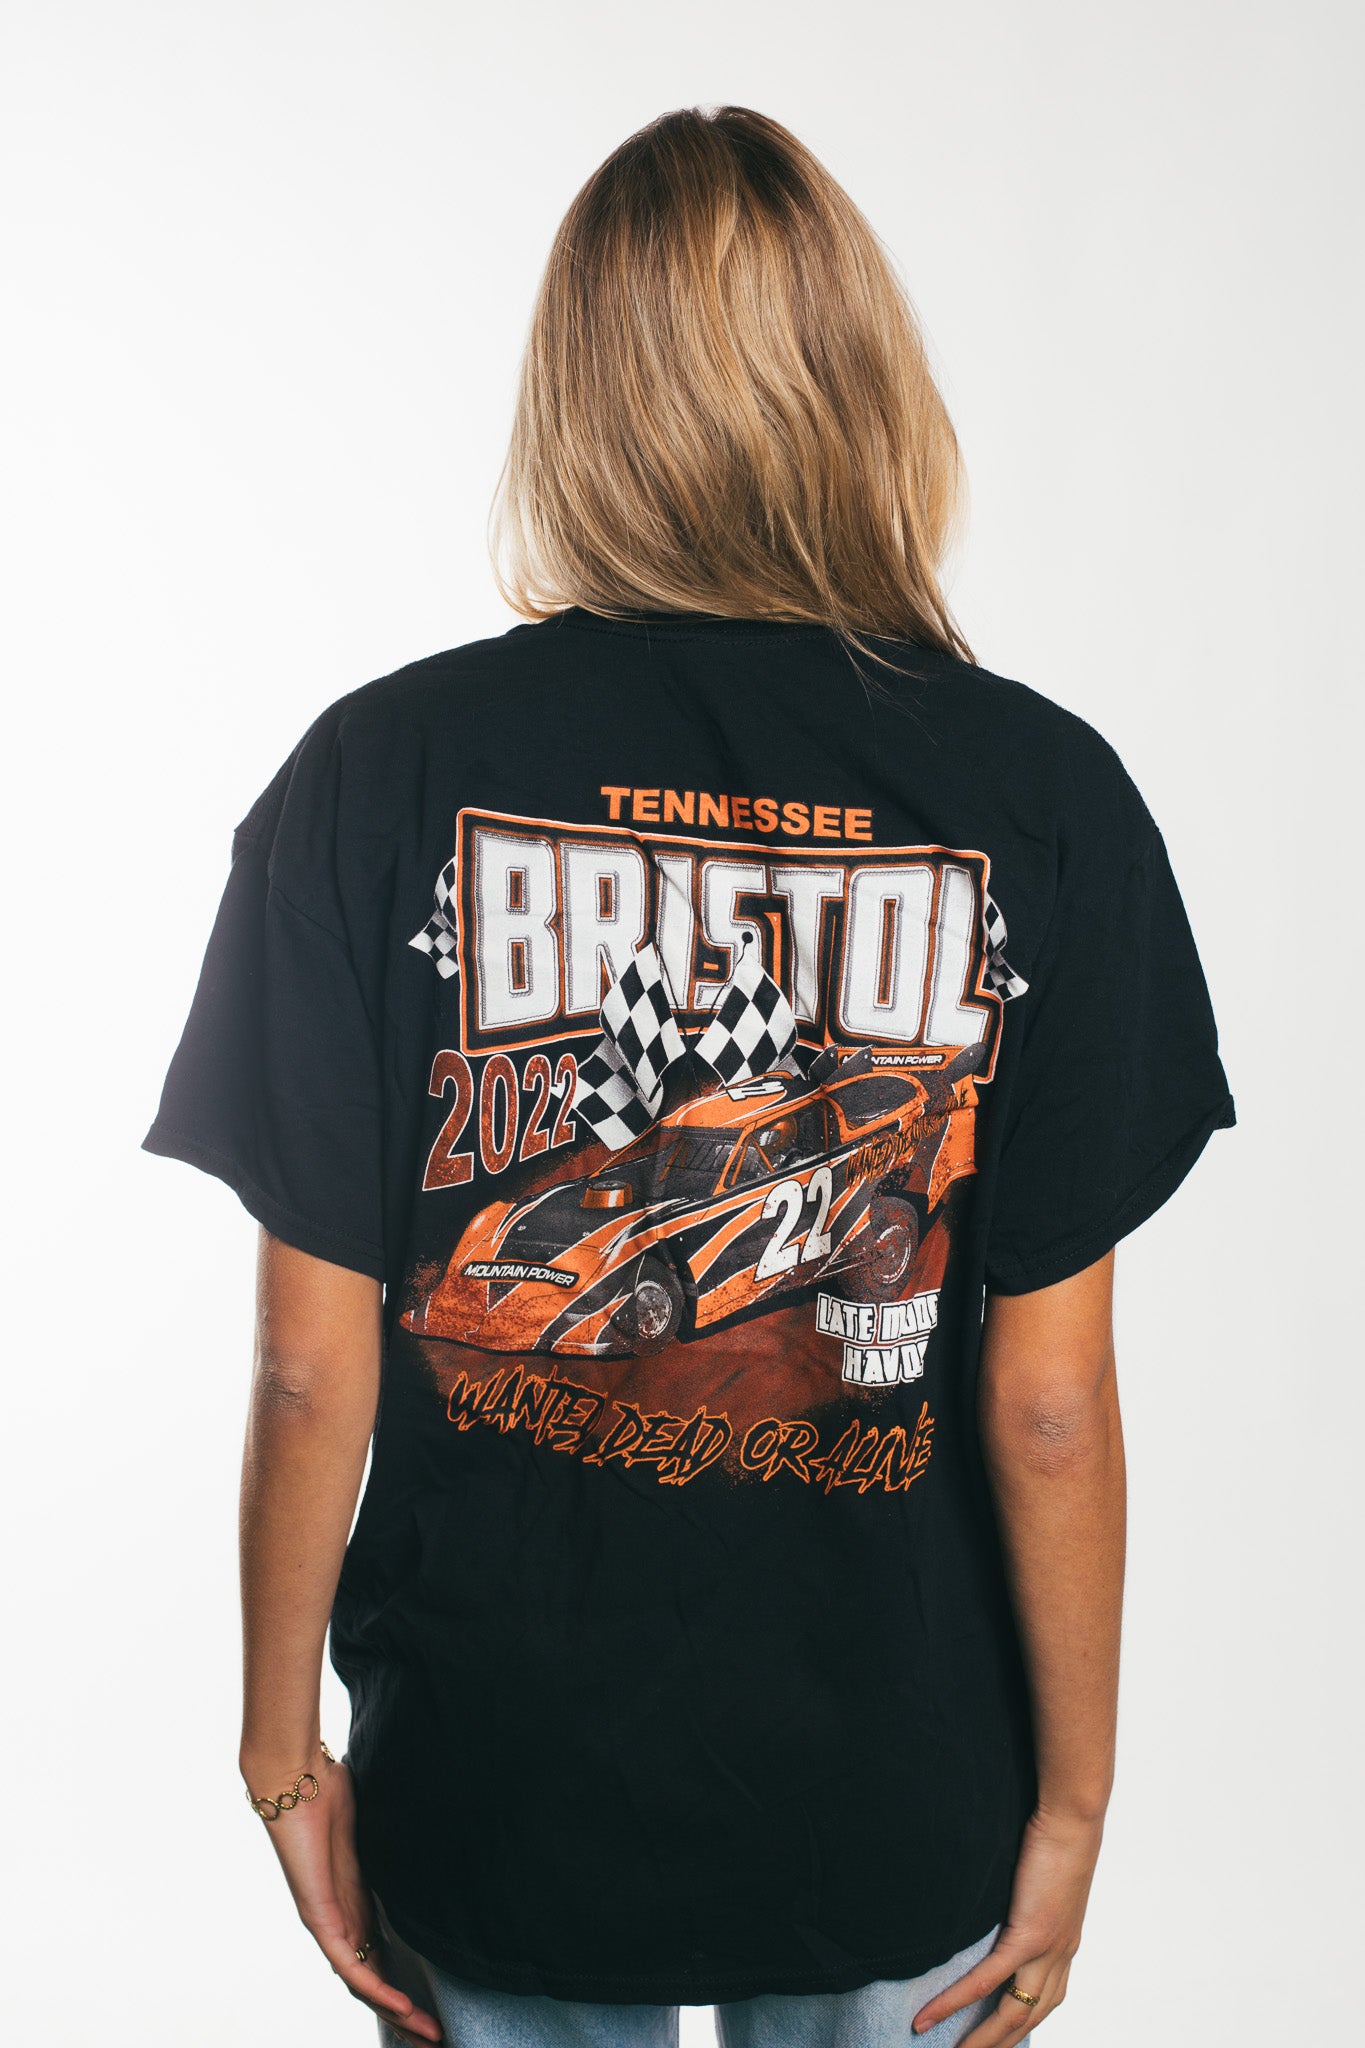 Bristol - T-Shirt (L)